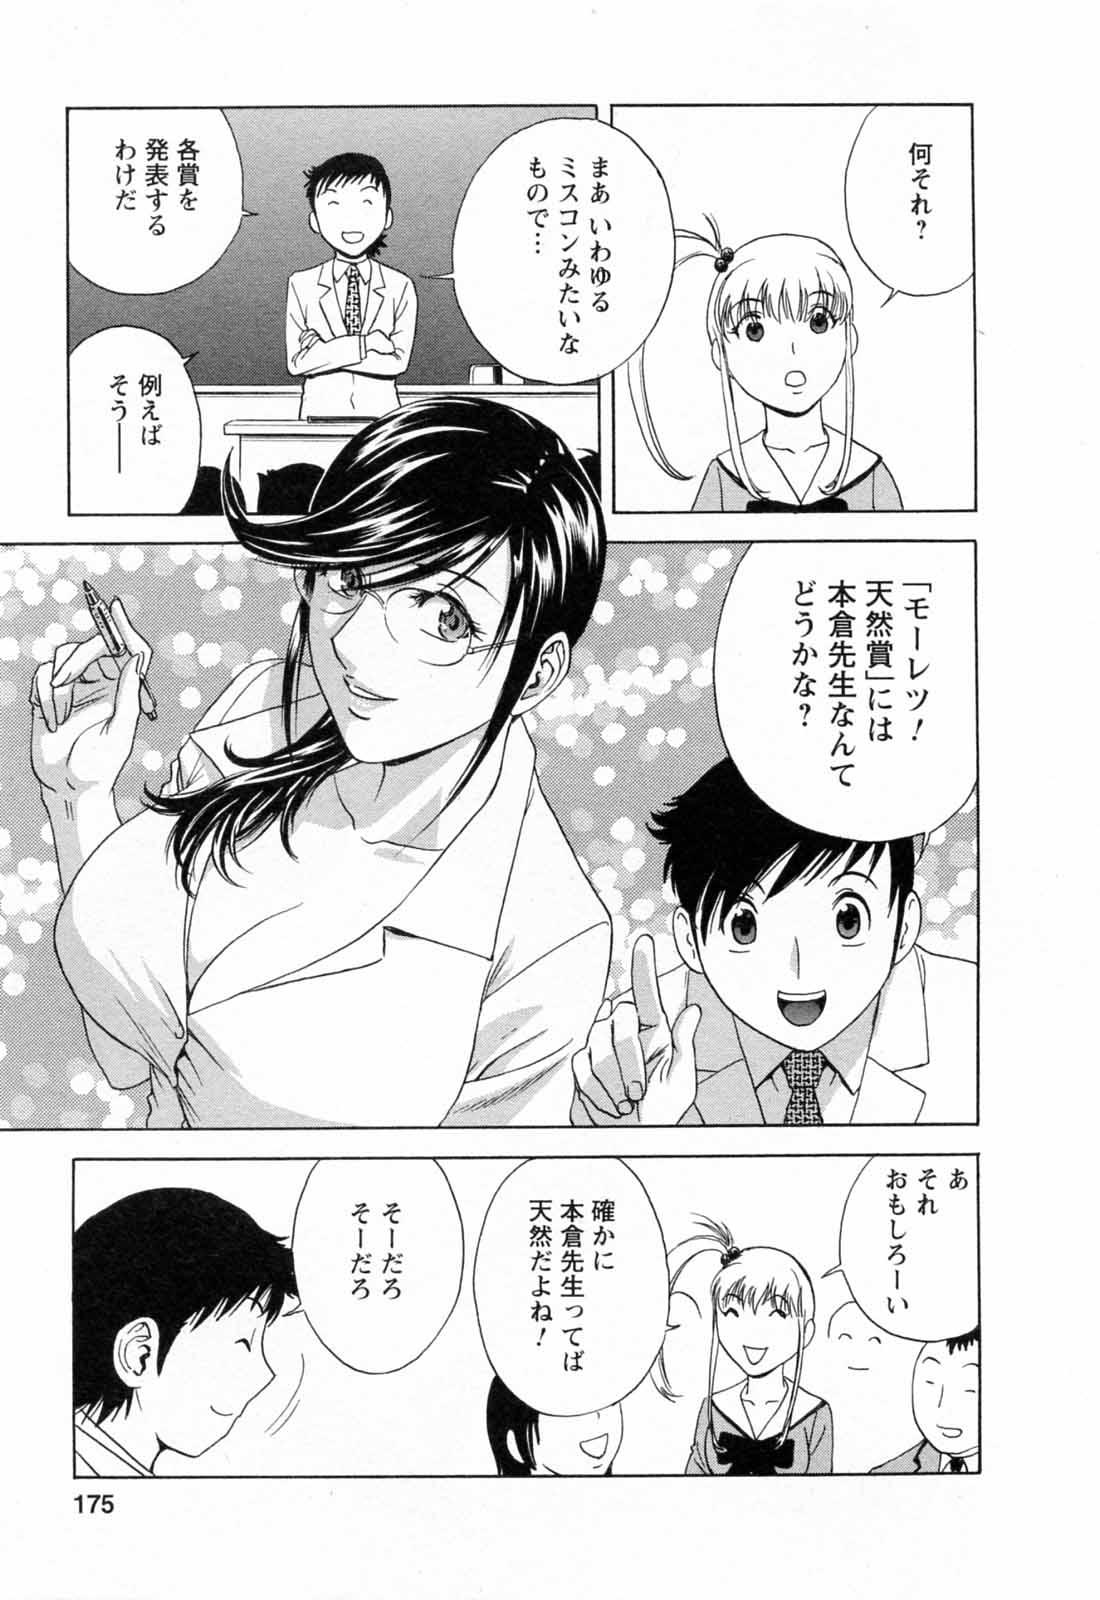 [Hidemaru] Mo-Retsu! Boin Sensei (Boing Boing Teacher) Vol.5 176